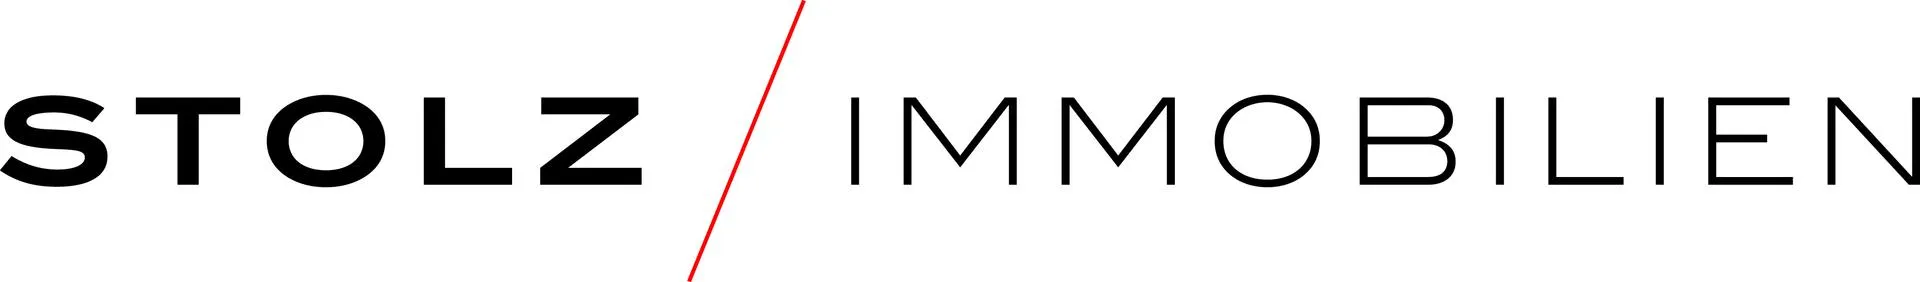 Makler Stolz Immobilien GmbH logo